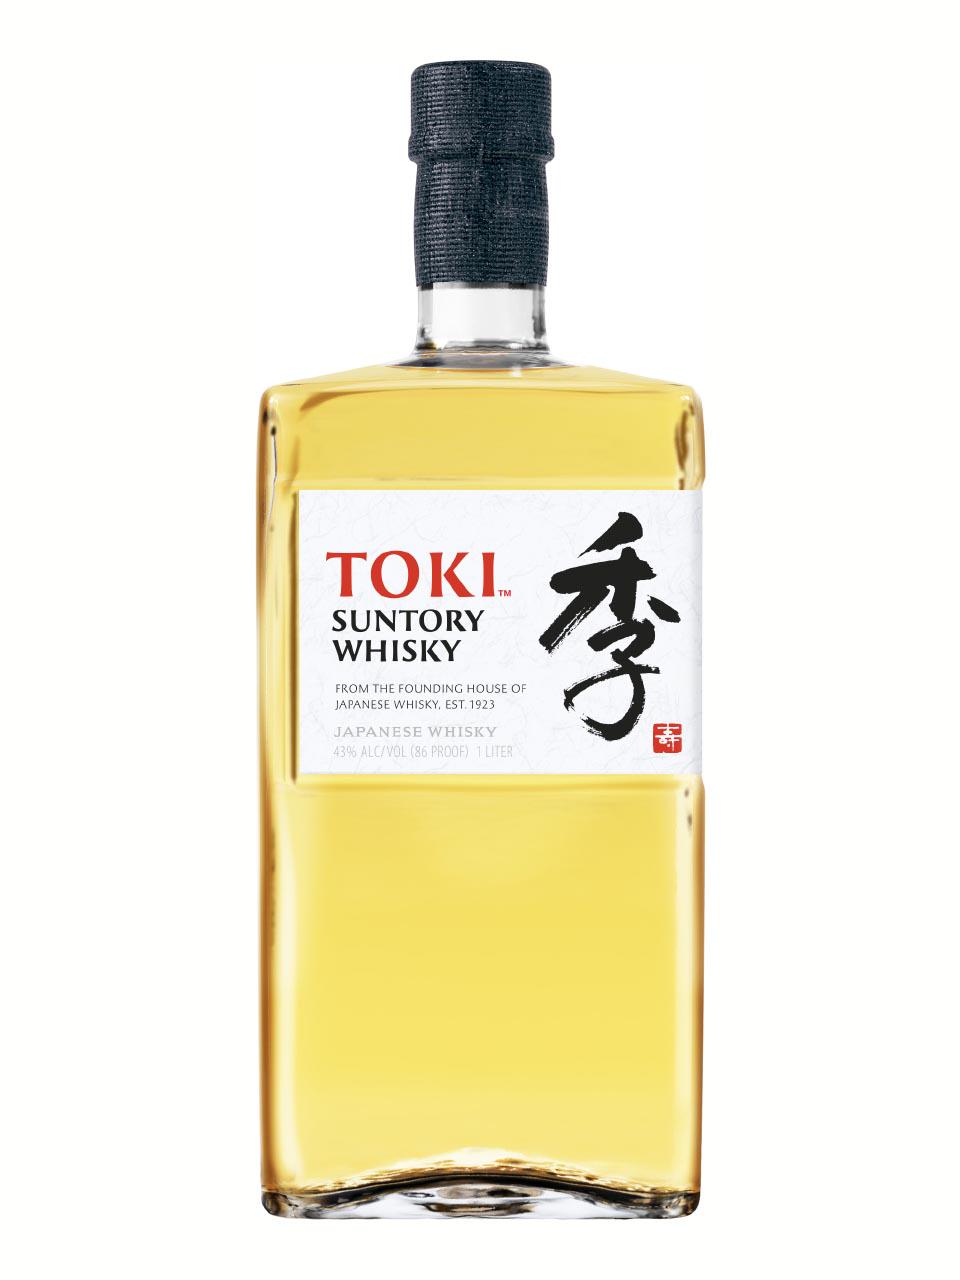 Toki Suntory Japanese Online 1L | Shopping Blended Airport Whisky Frankfurt 43